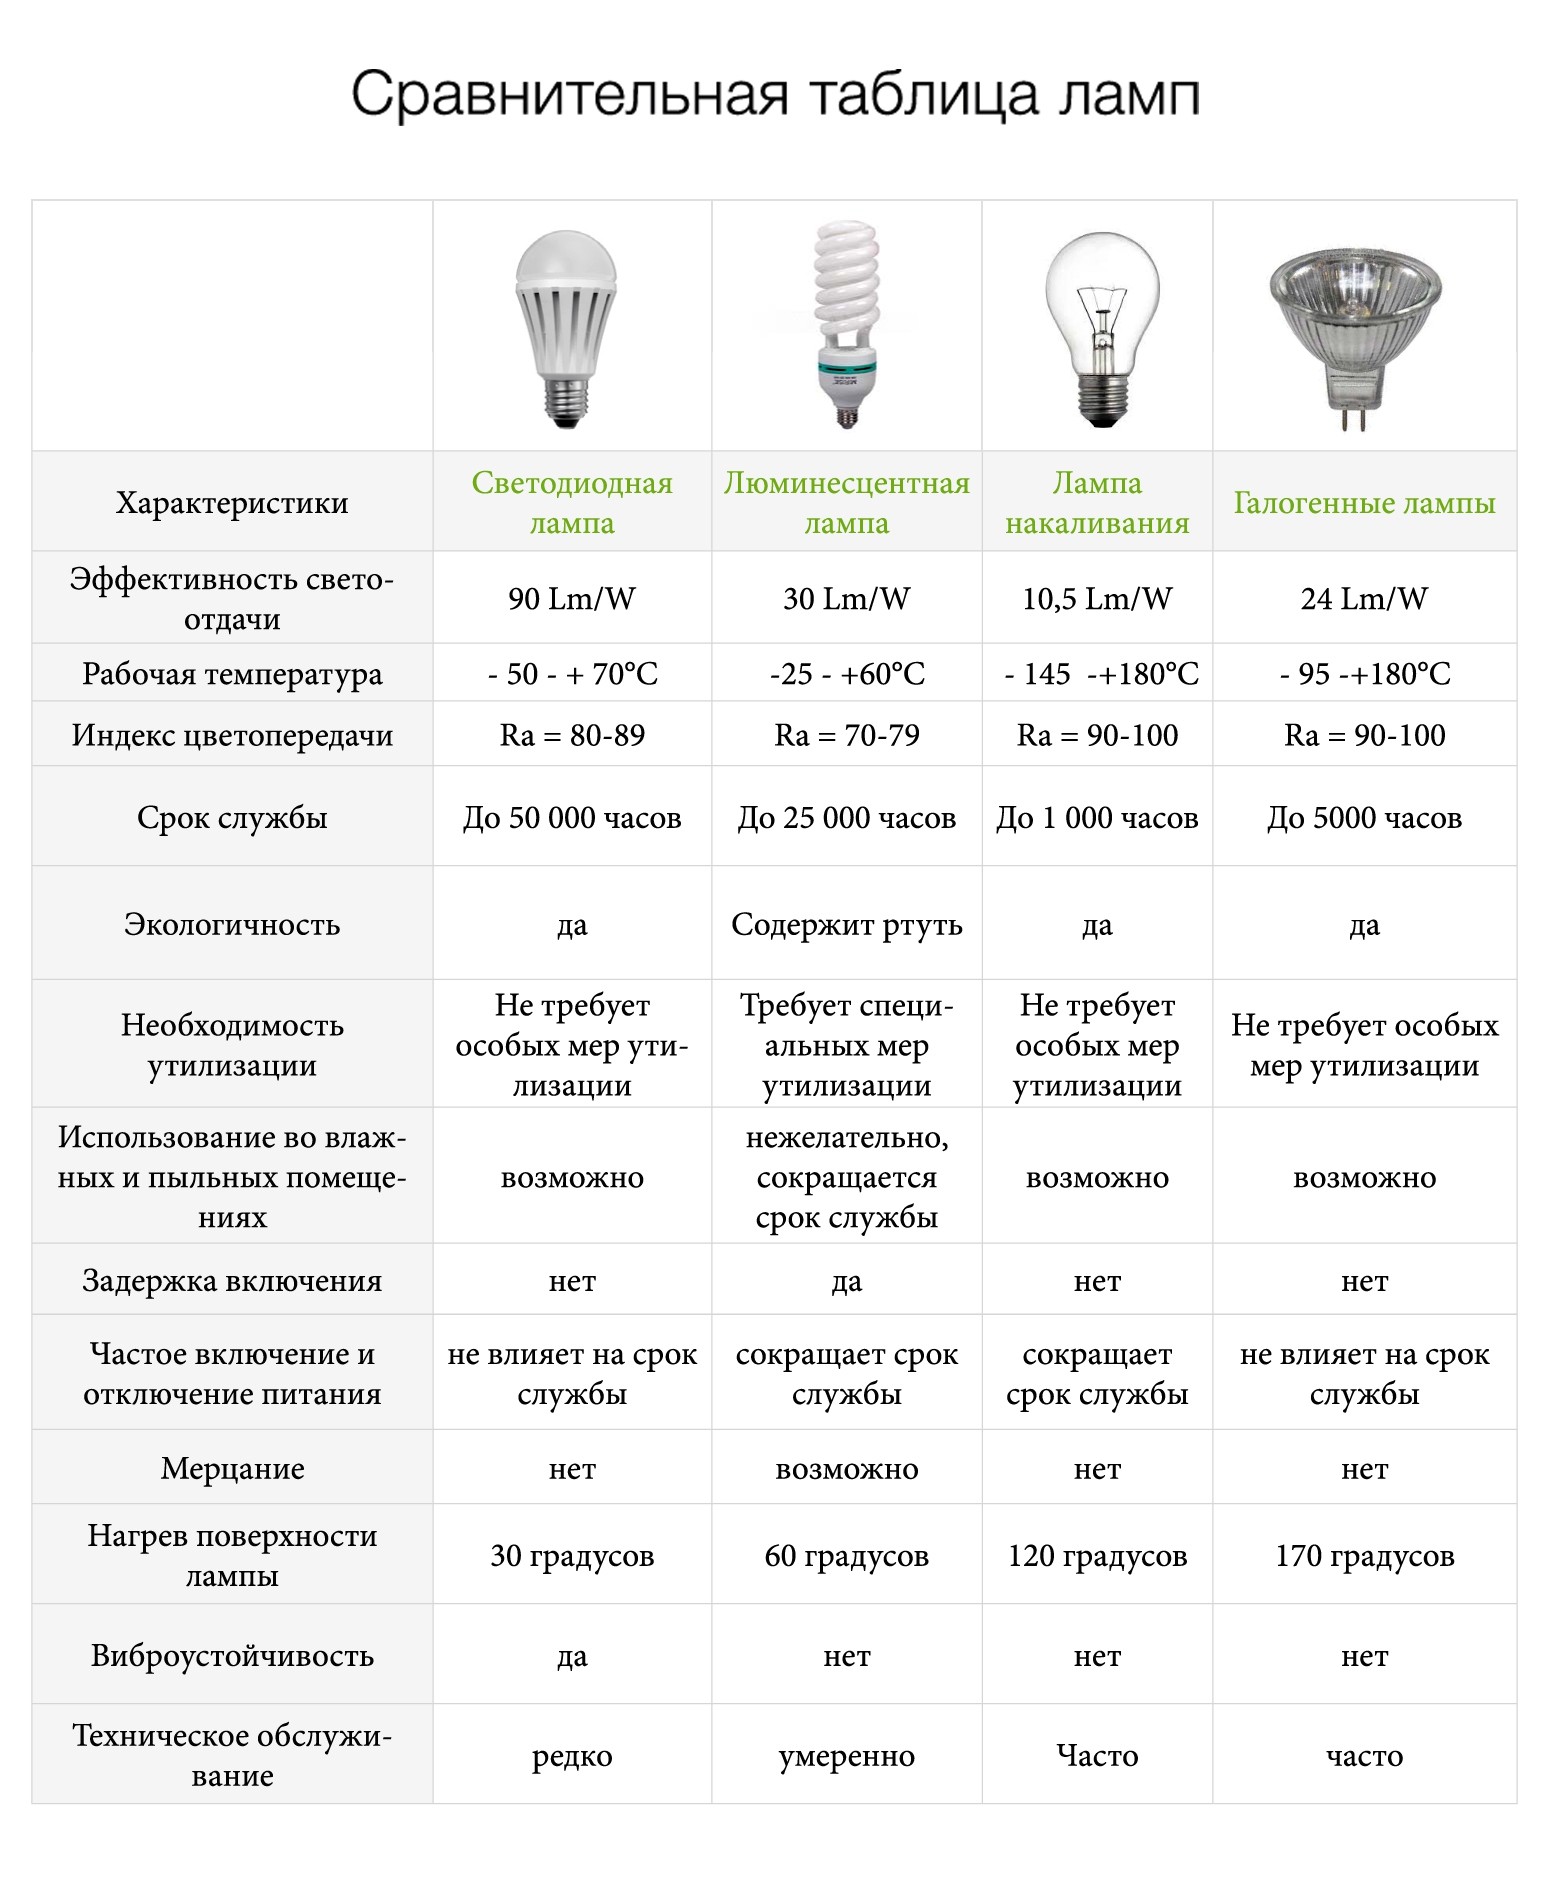 Сравнительная характеристика разных типов современных ламп